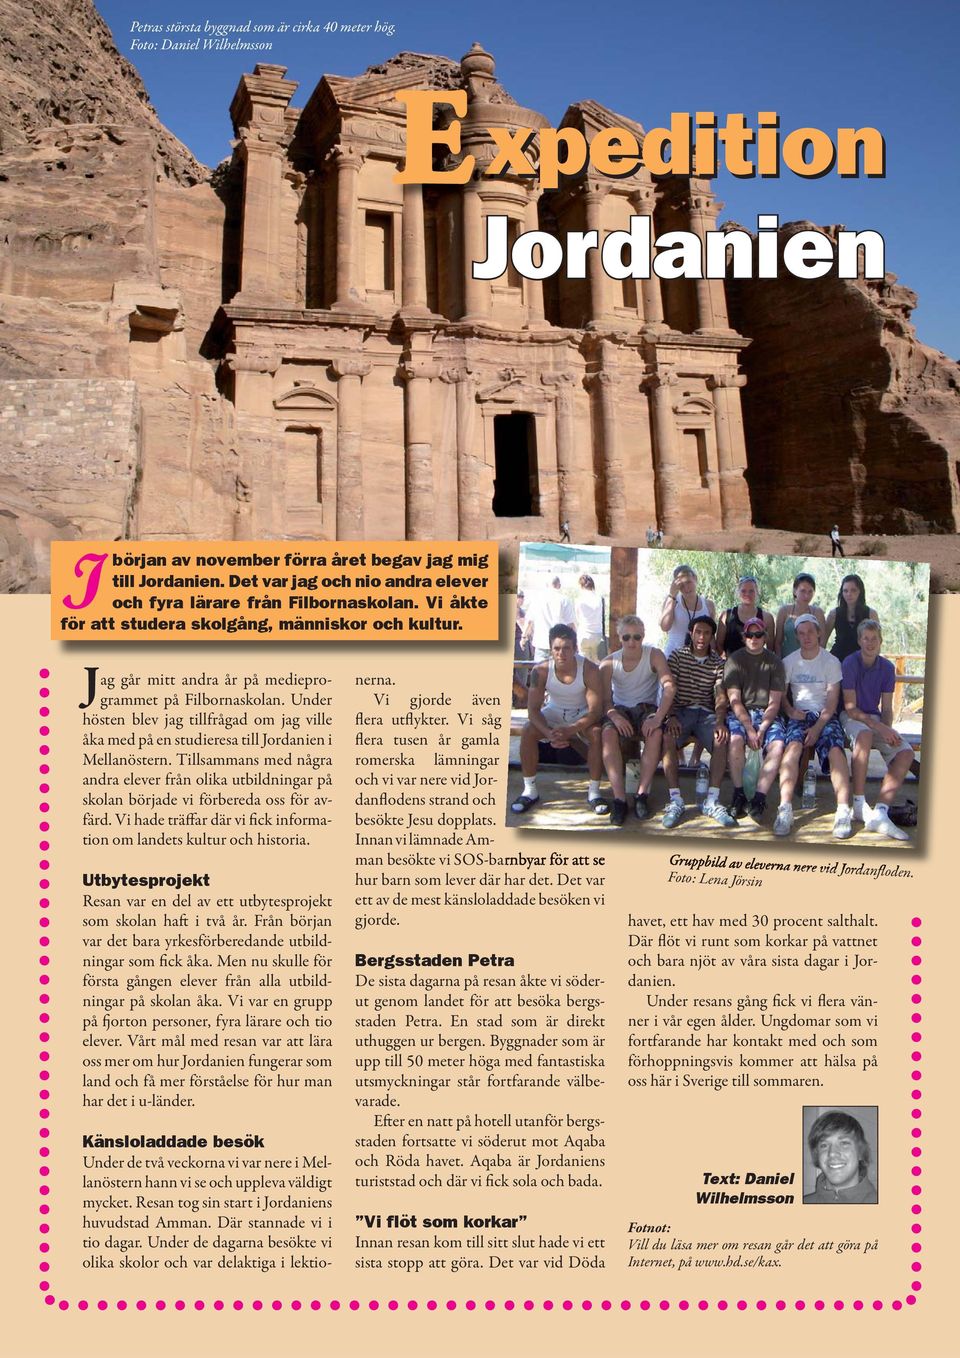 Under hösten blev jag tillfrågad om jag ville åka med på en studieresa till Jordanien i Mellanöstern.